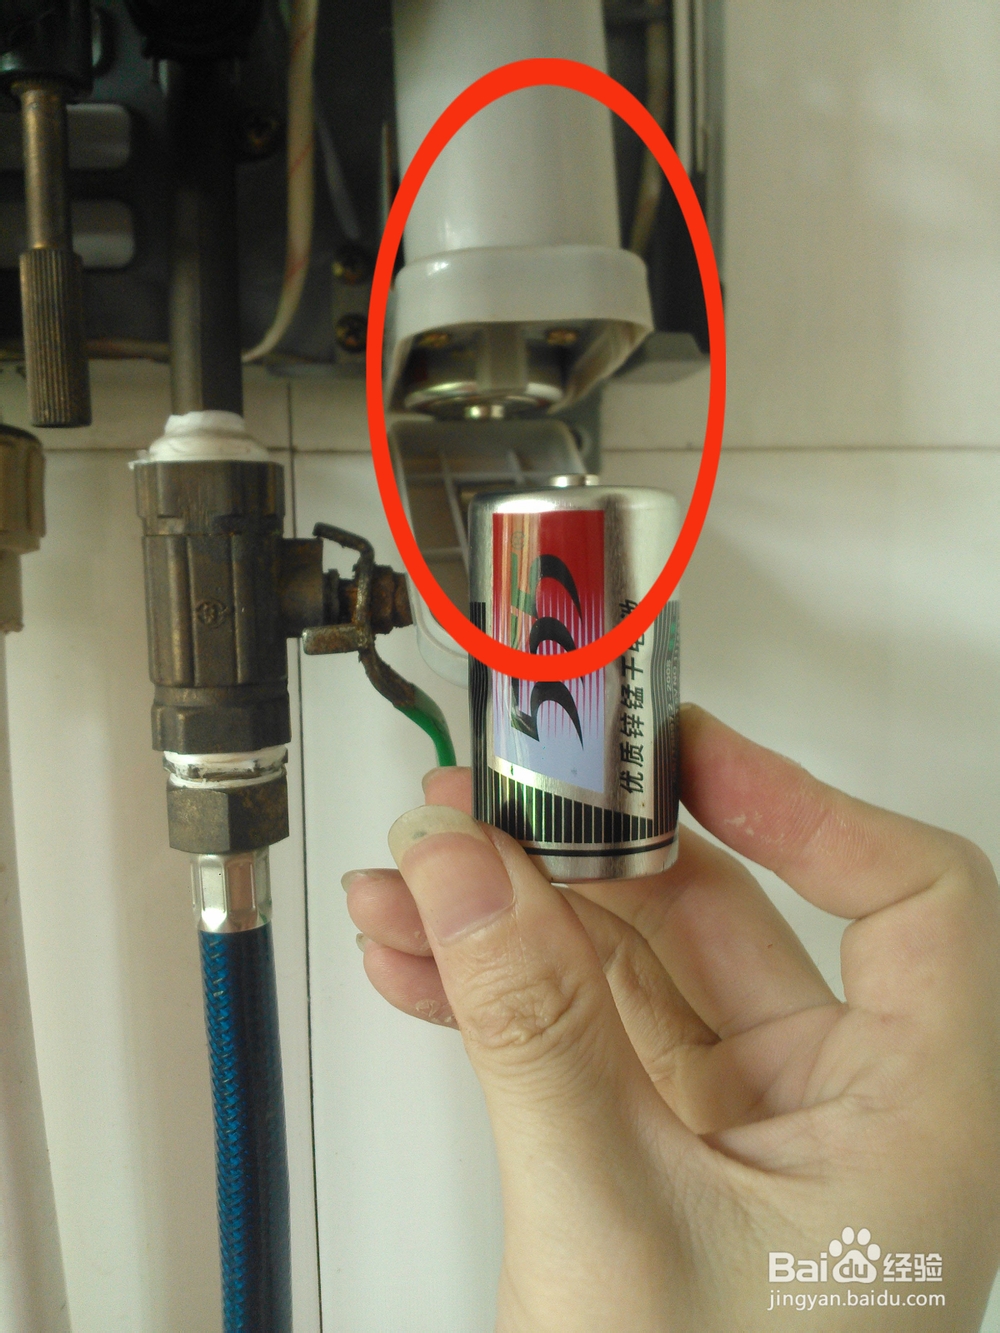 燃气热水器打不着火的原因实例分析解决图解